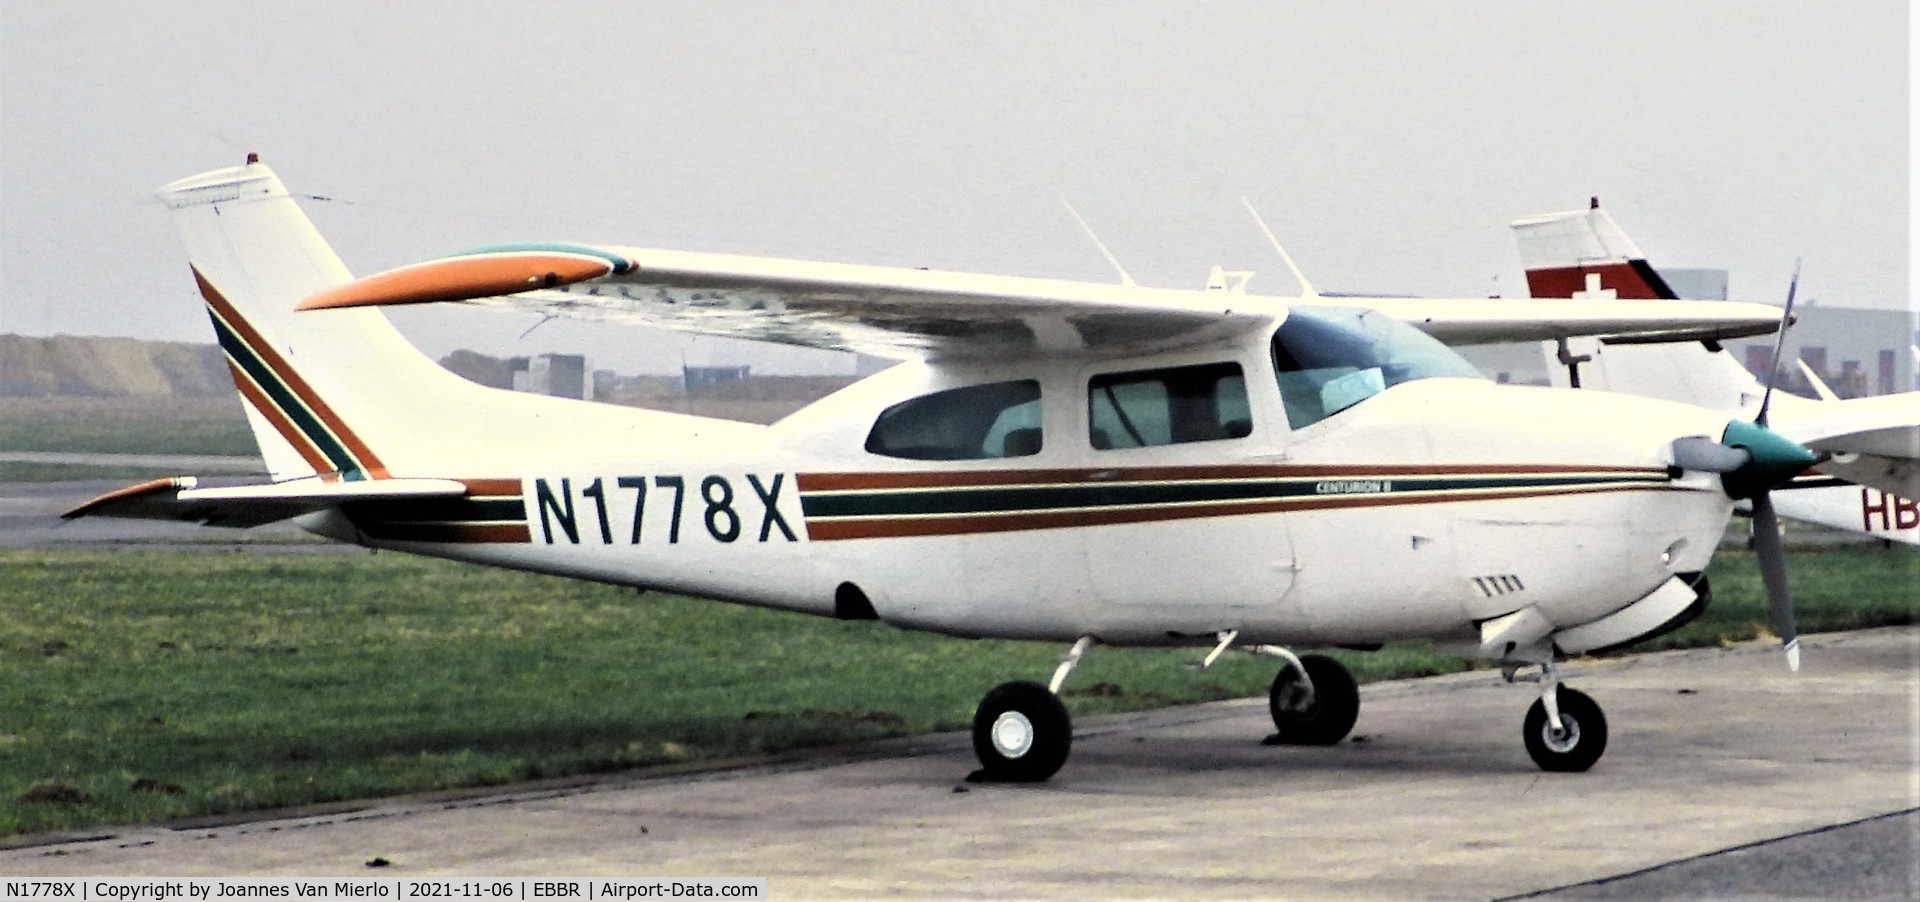 N1778X, 1975 Cessna 210L Centurion C/N 21060798, Slide scan